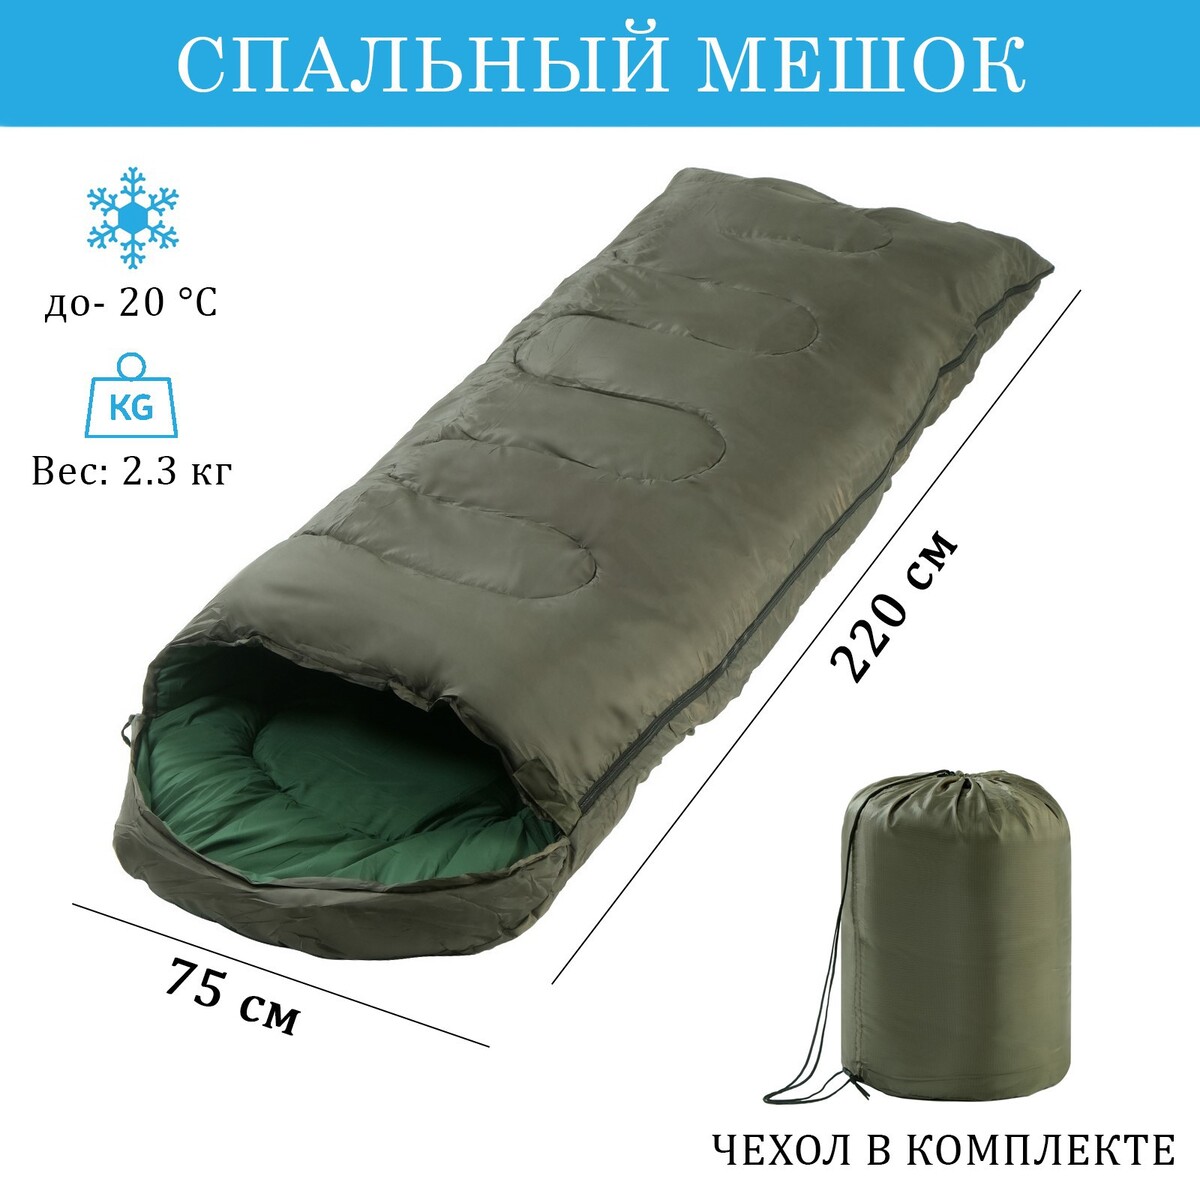 Спальный мешок, туристический, 220 х 75 см, до -20 градусов, 700 г/м2, цвет хвои спальный мешок туристический atemi quilt 250rn 250 г м2 5 с правый